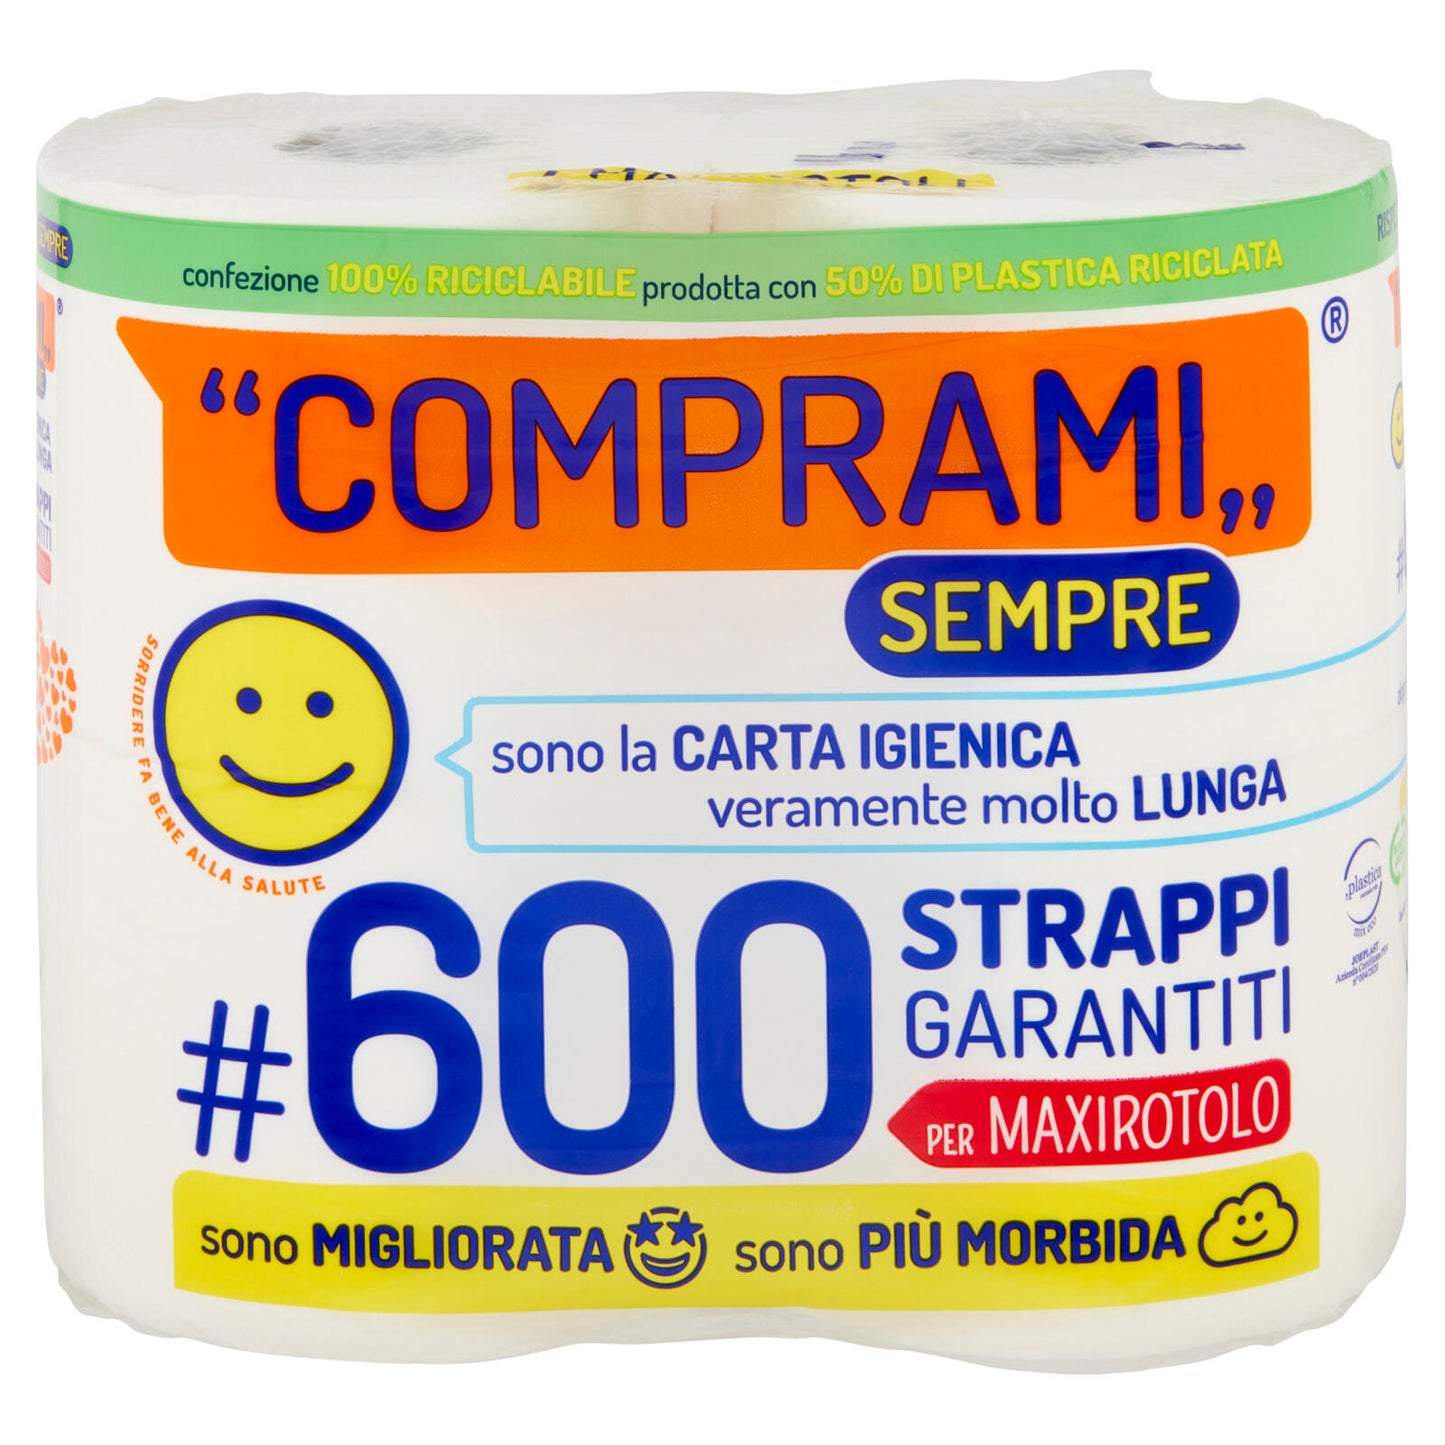 Comprami Sempre Carta Igienica #600 Strappi Maxirotoli 4 pz